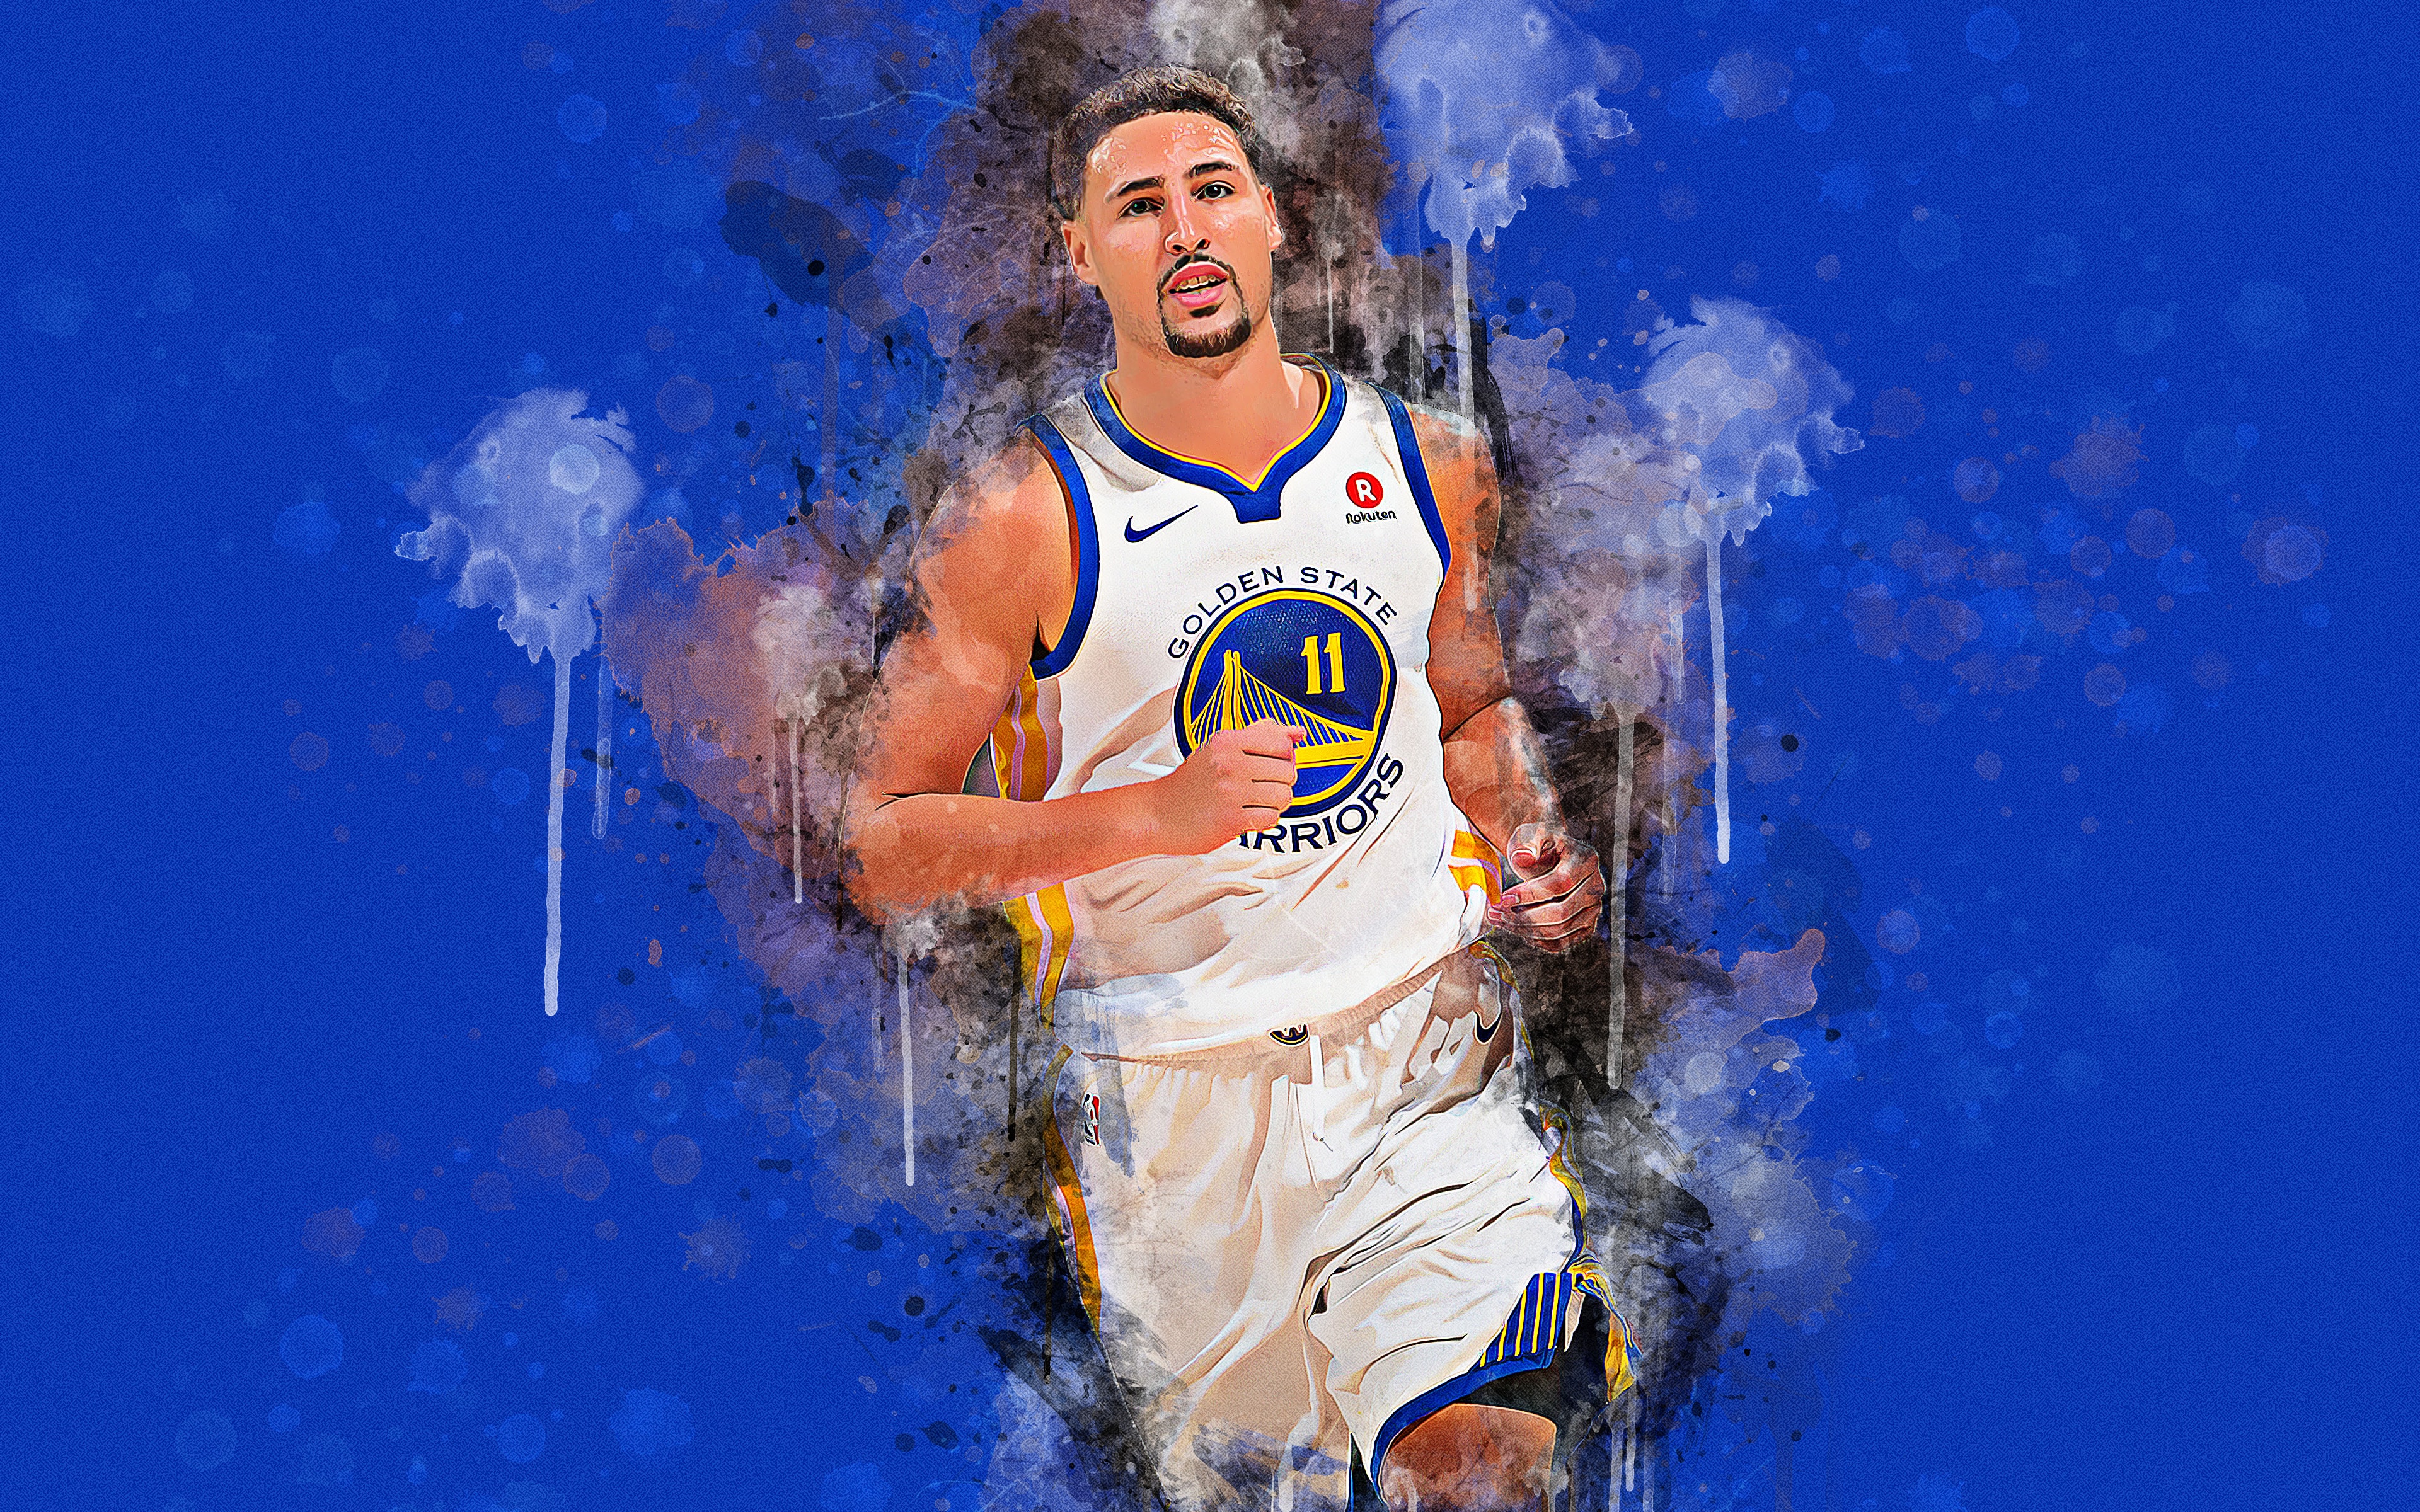 Wallpaper Of Golden State Warriors, Klay Thompson, - Klay Thompson Wallpaper 2019 , HD Wallpaper & Backgrounds